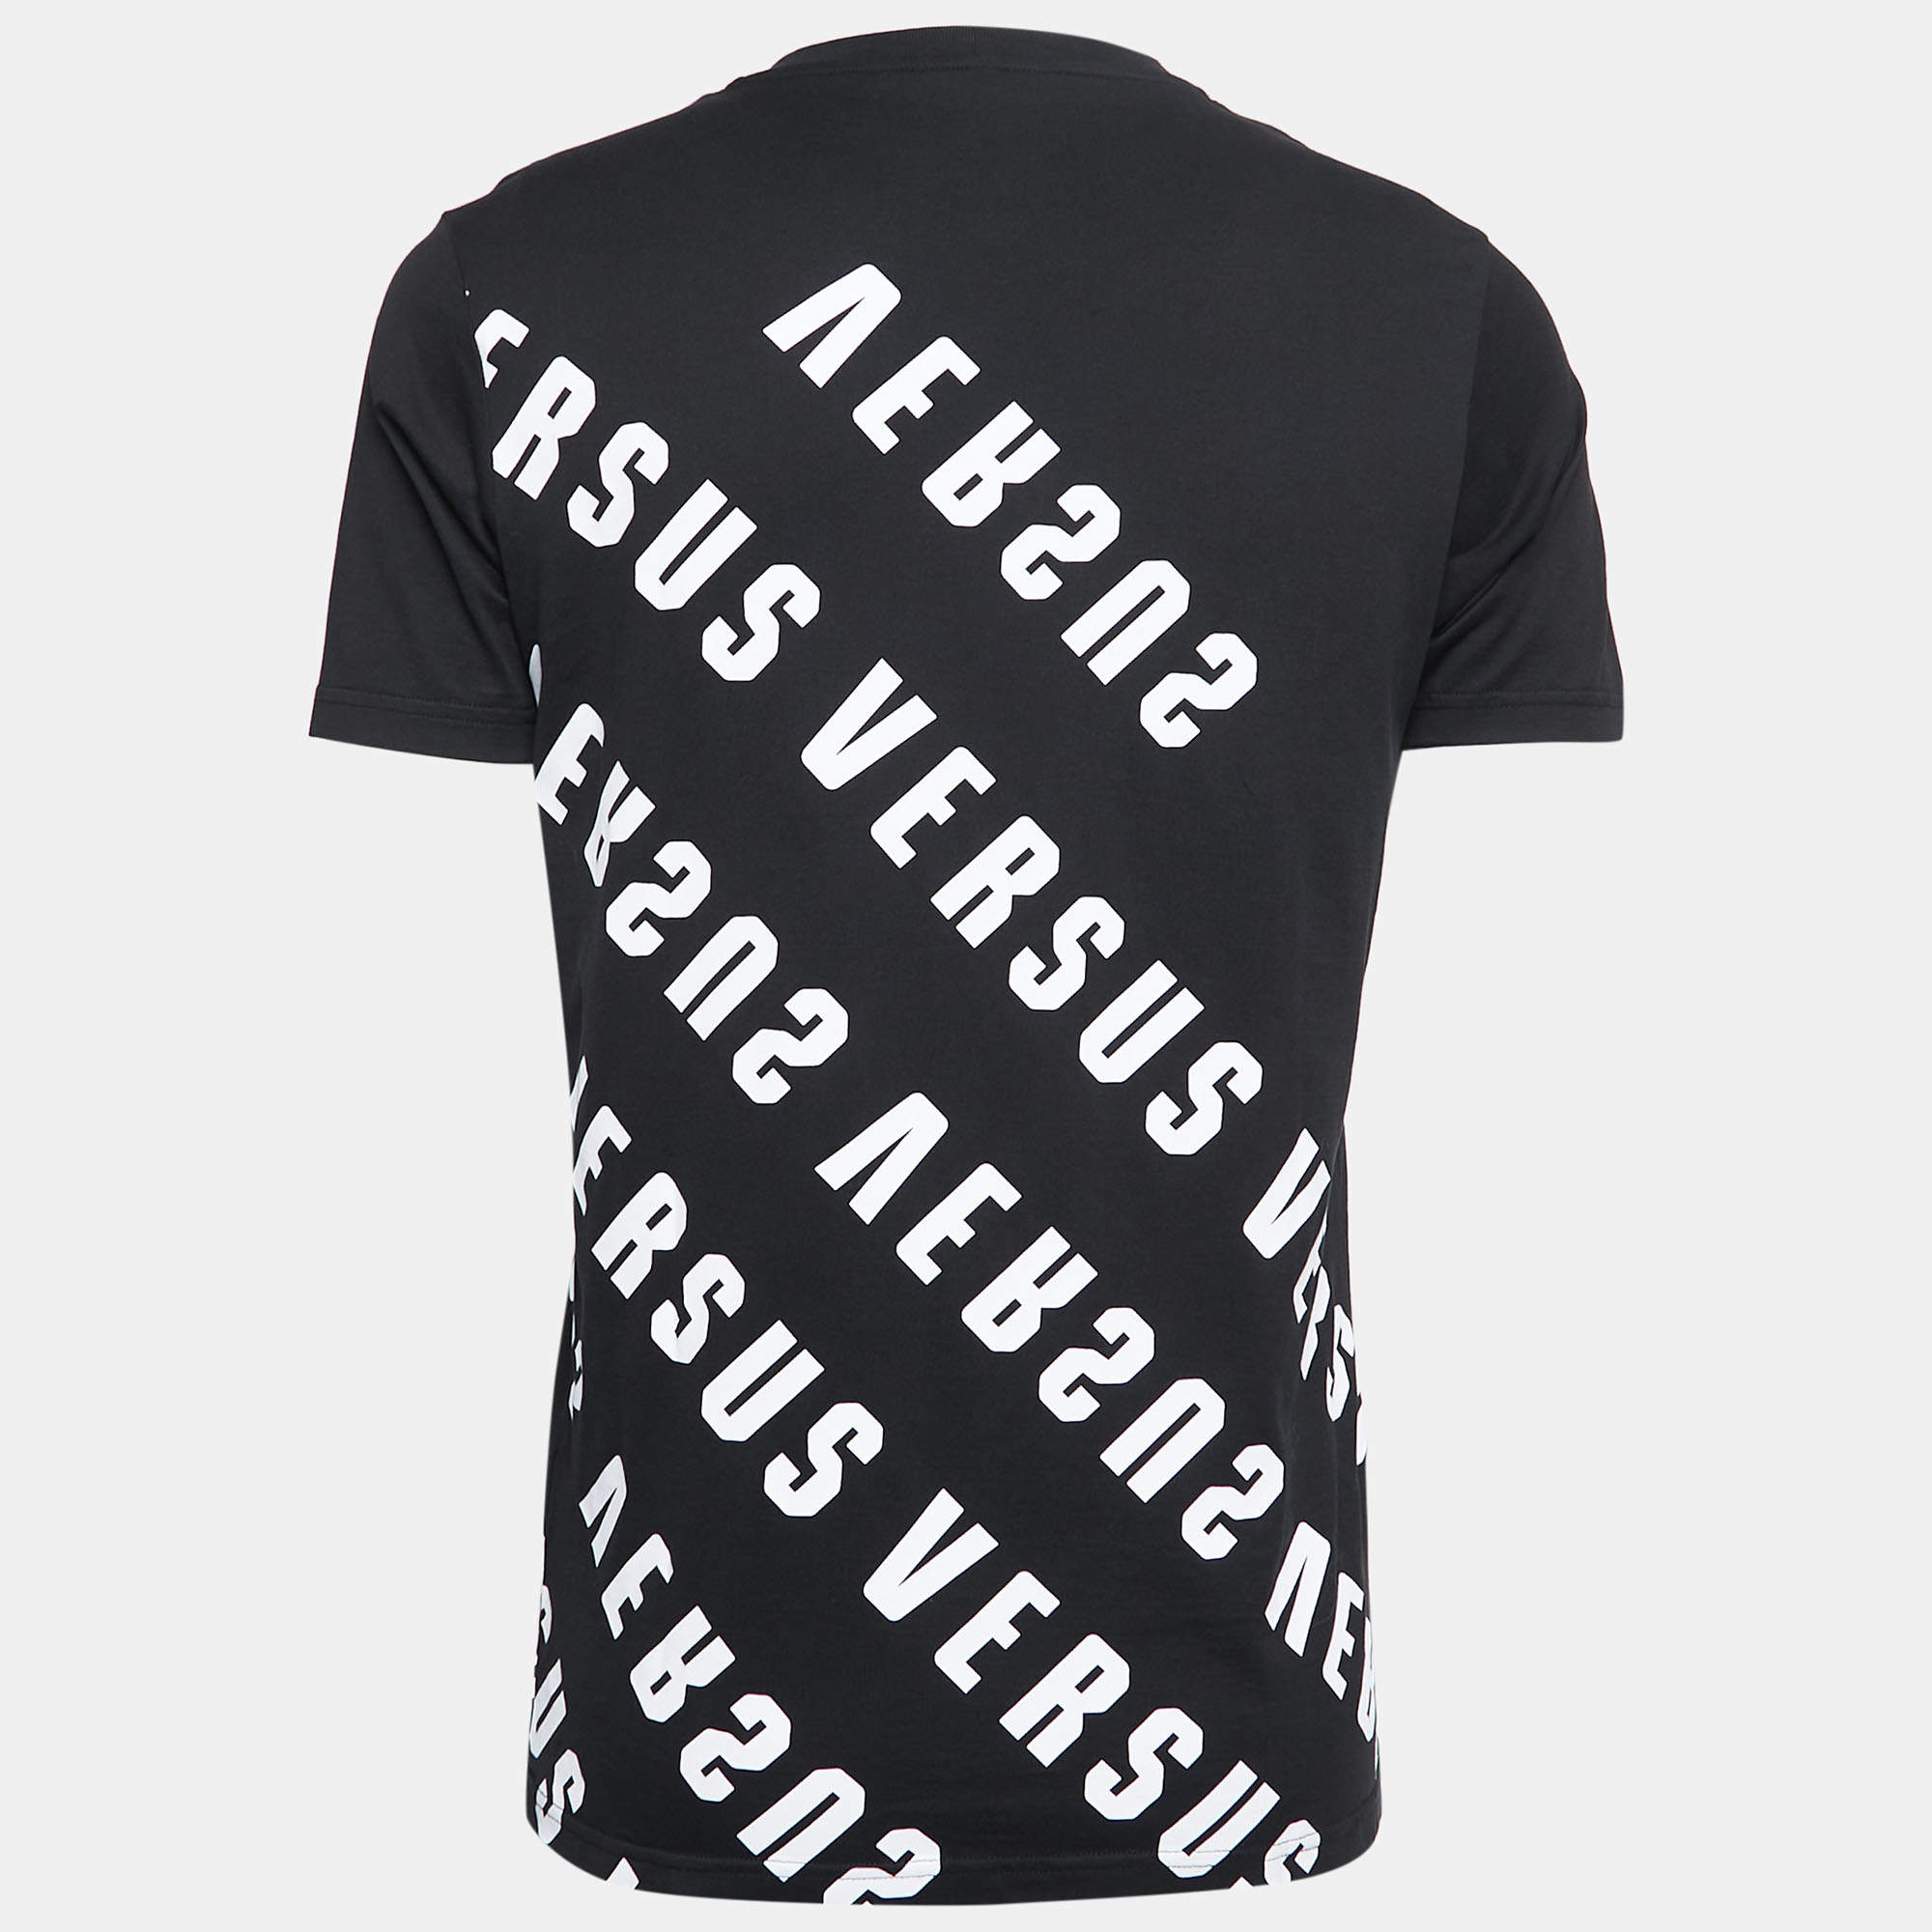 Versus Versace Black Logo Print Cotton Crew Neck T-Shirt S Versus Versace